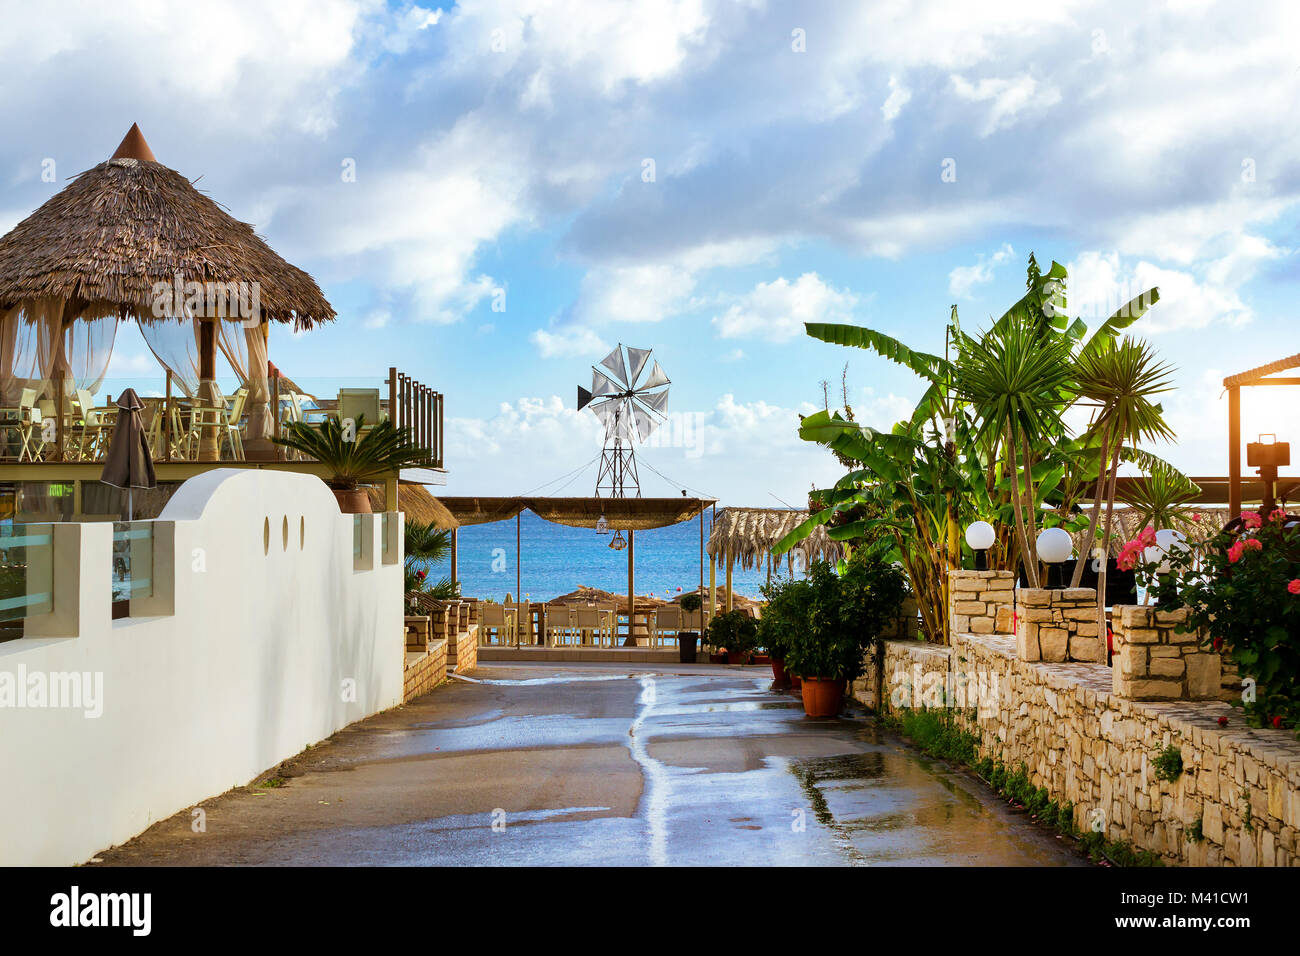 Dekorative Windmühle mit weißen Propeller auf thatched Dach installiert. Tische mit strohgedeckten Sonnenschirme am Strandcafé am Meer. Livadi Strand im Meer, die Bucht Stockfoto